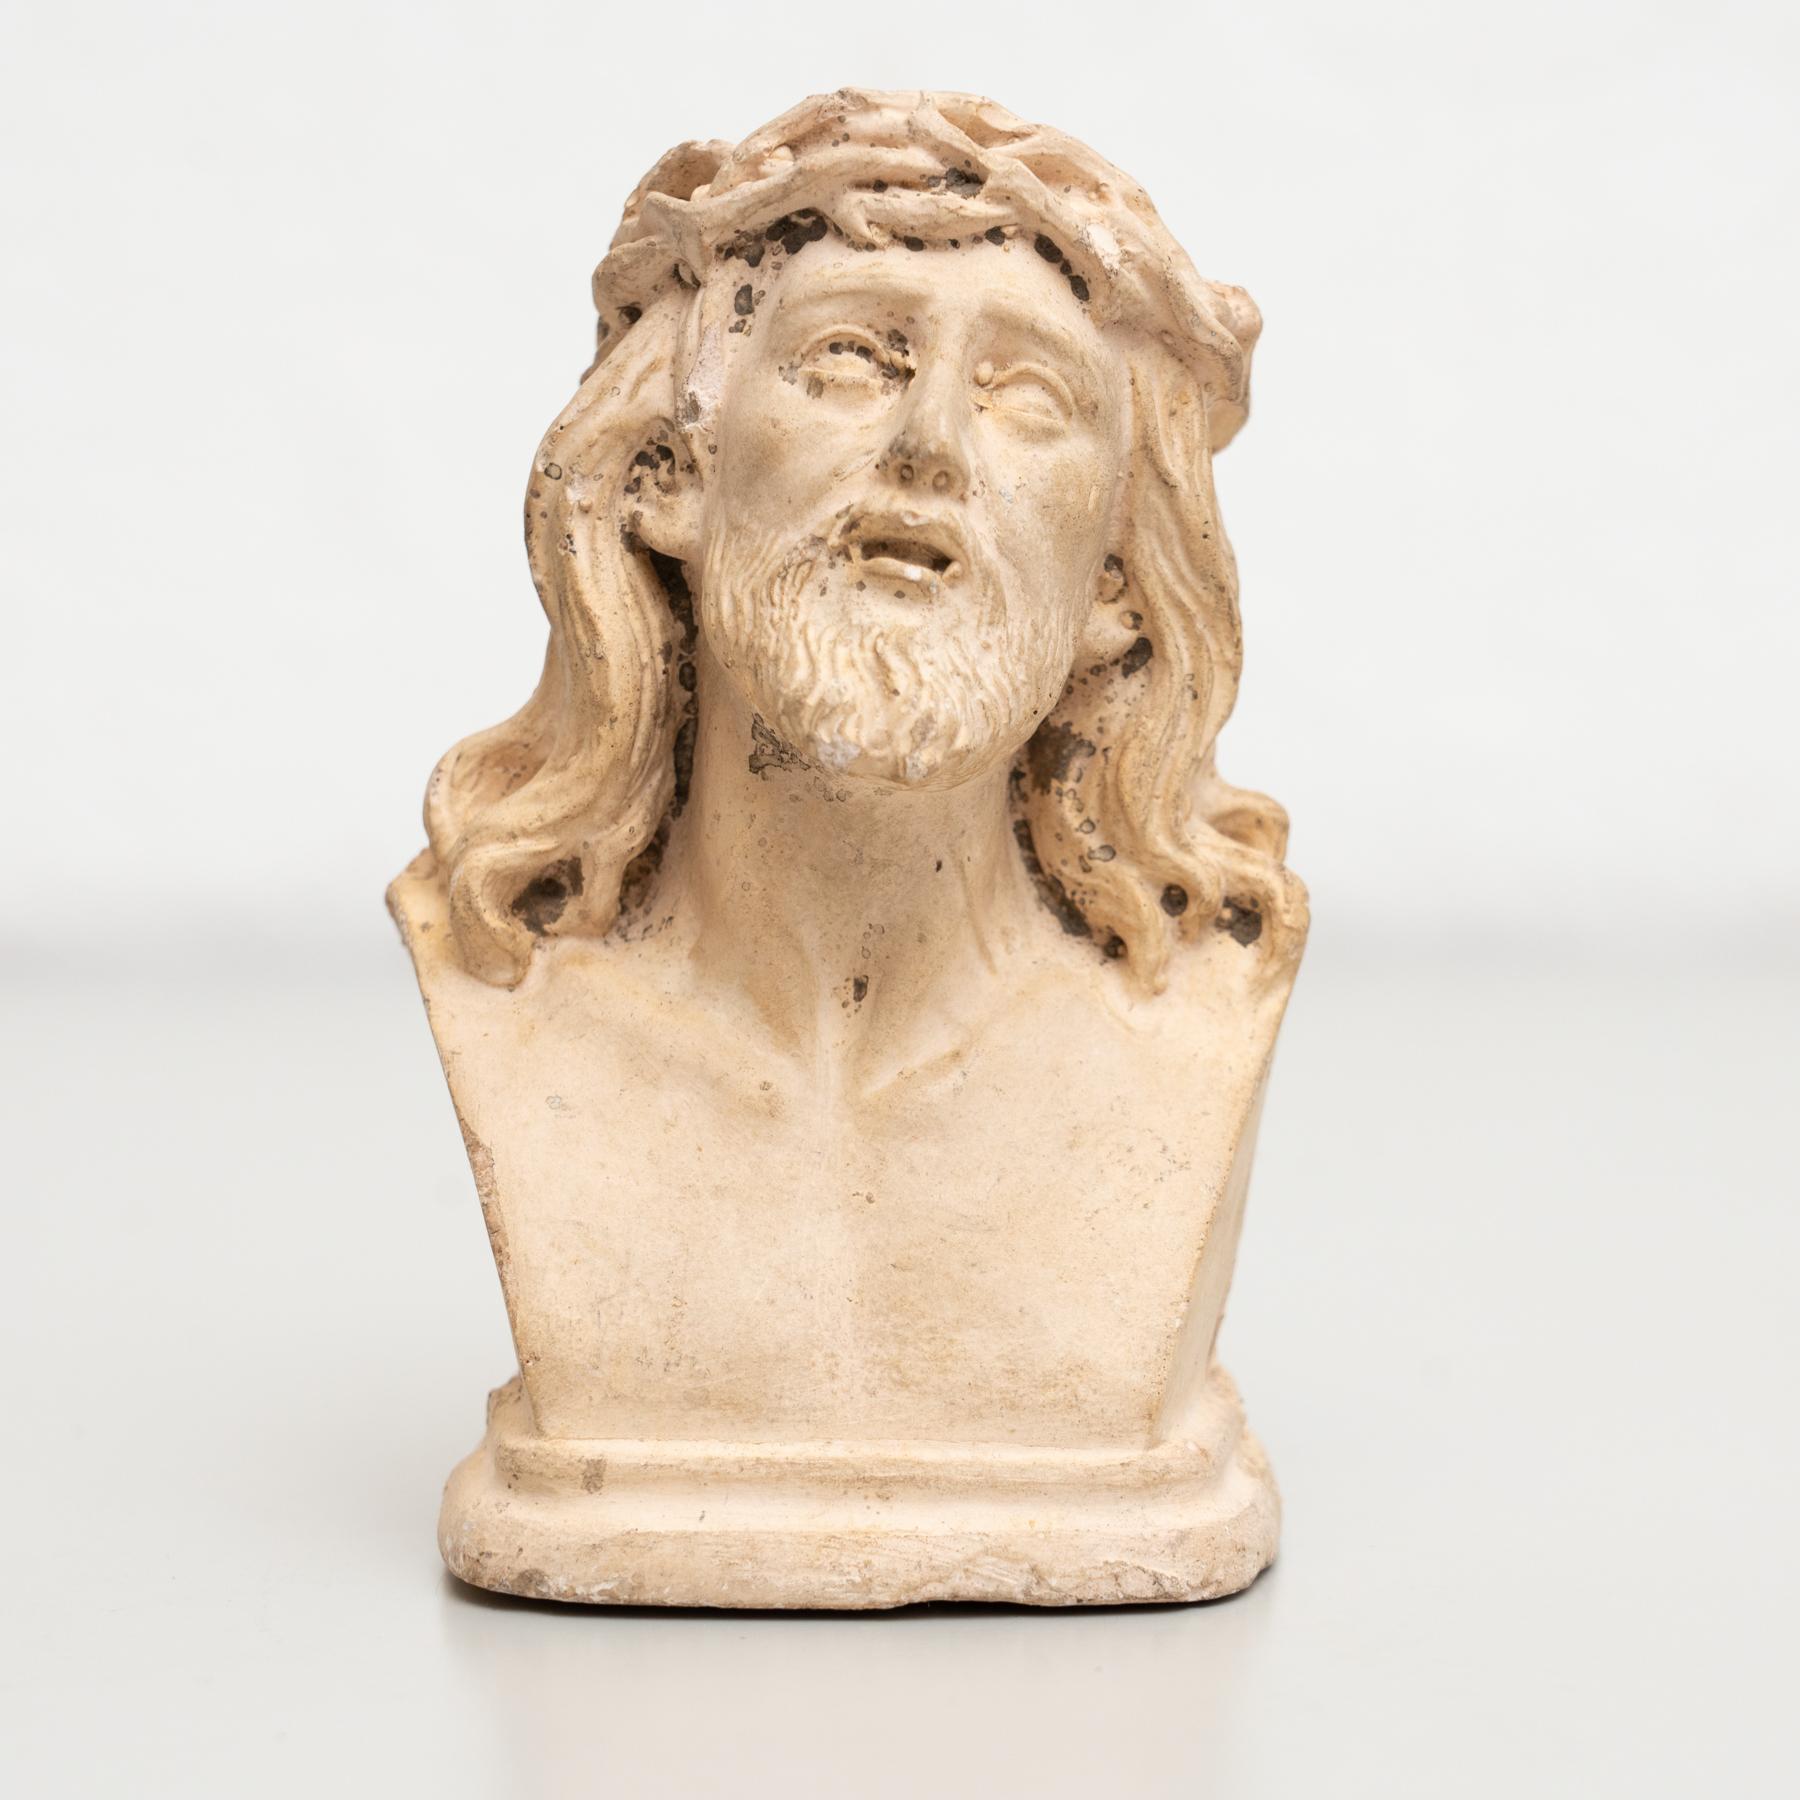 Figure religieuse traditionnelle en plâtre représentant Jésus-Christ.

Fabriqué dans un atelier catalan traditionnel à Olot, en Espagne, vers 1950.

En état d'origine, avec une usure mineure conforme à l'âge et à l'utilisation, préservant une